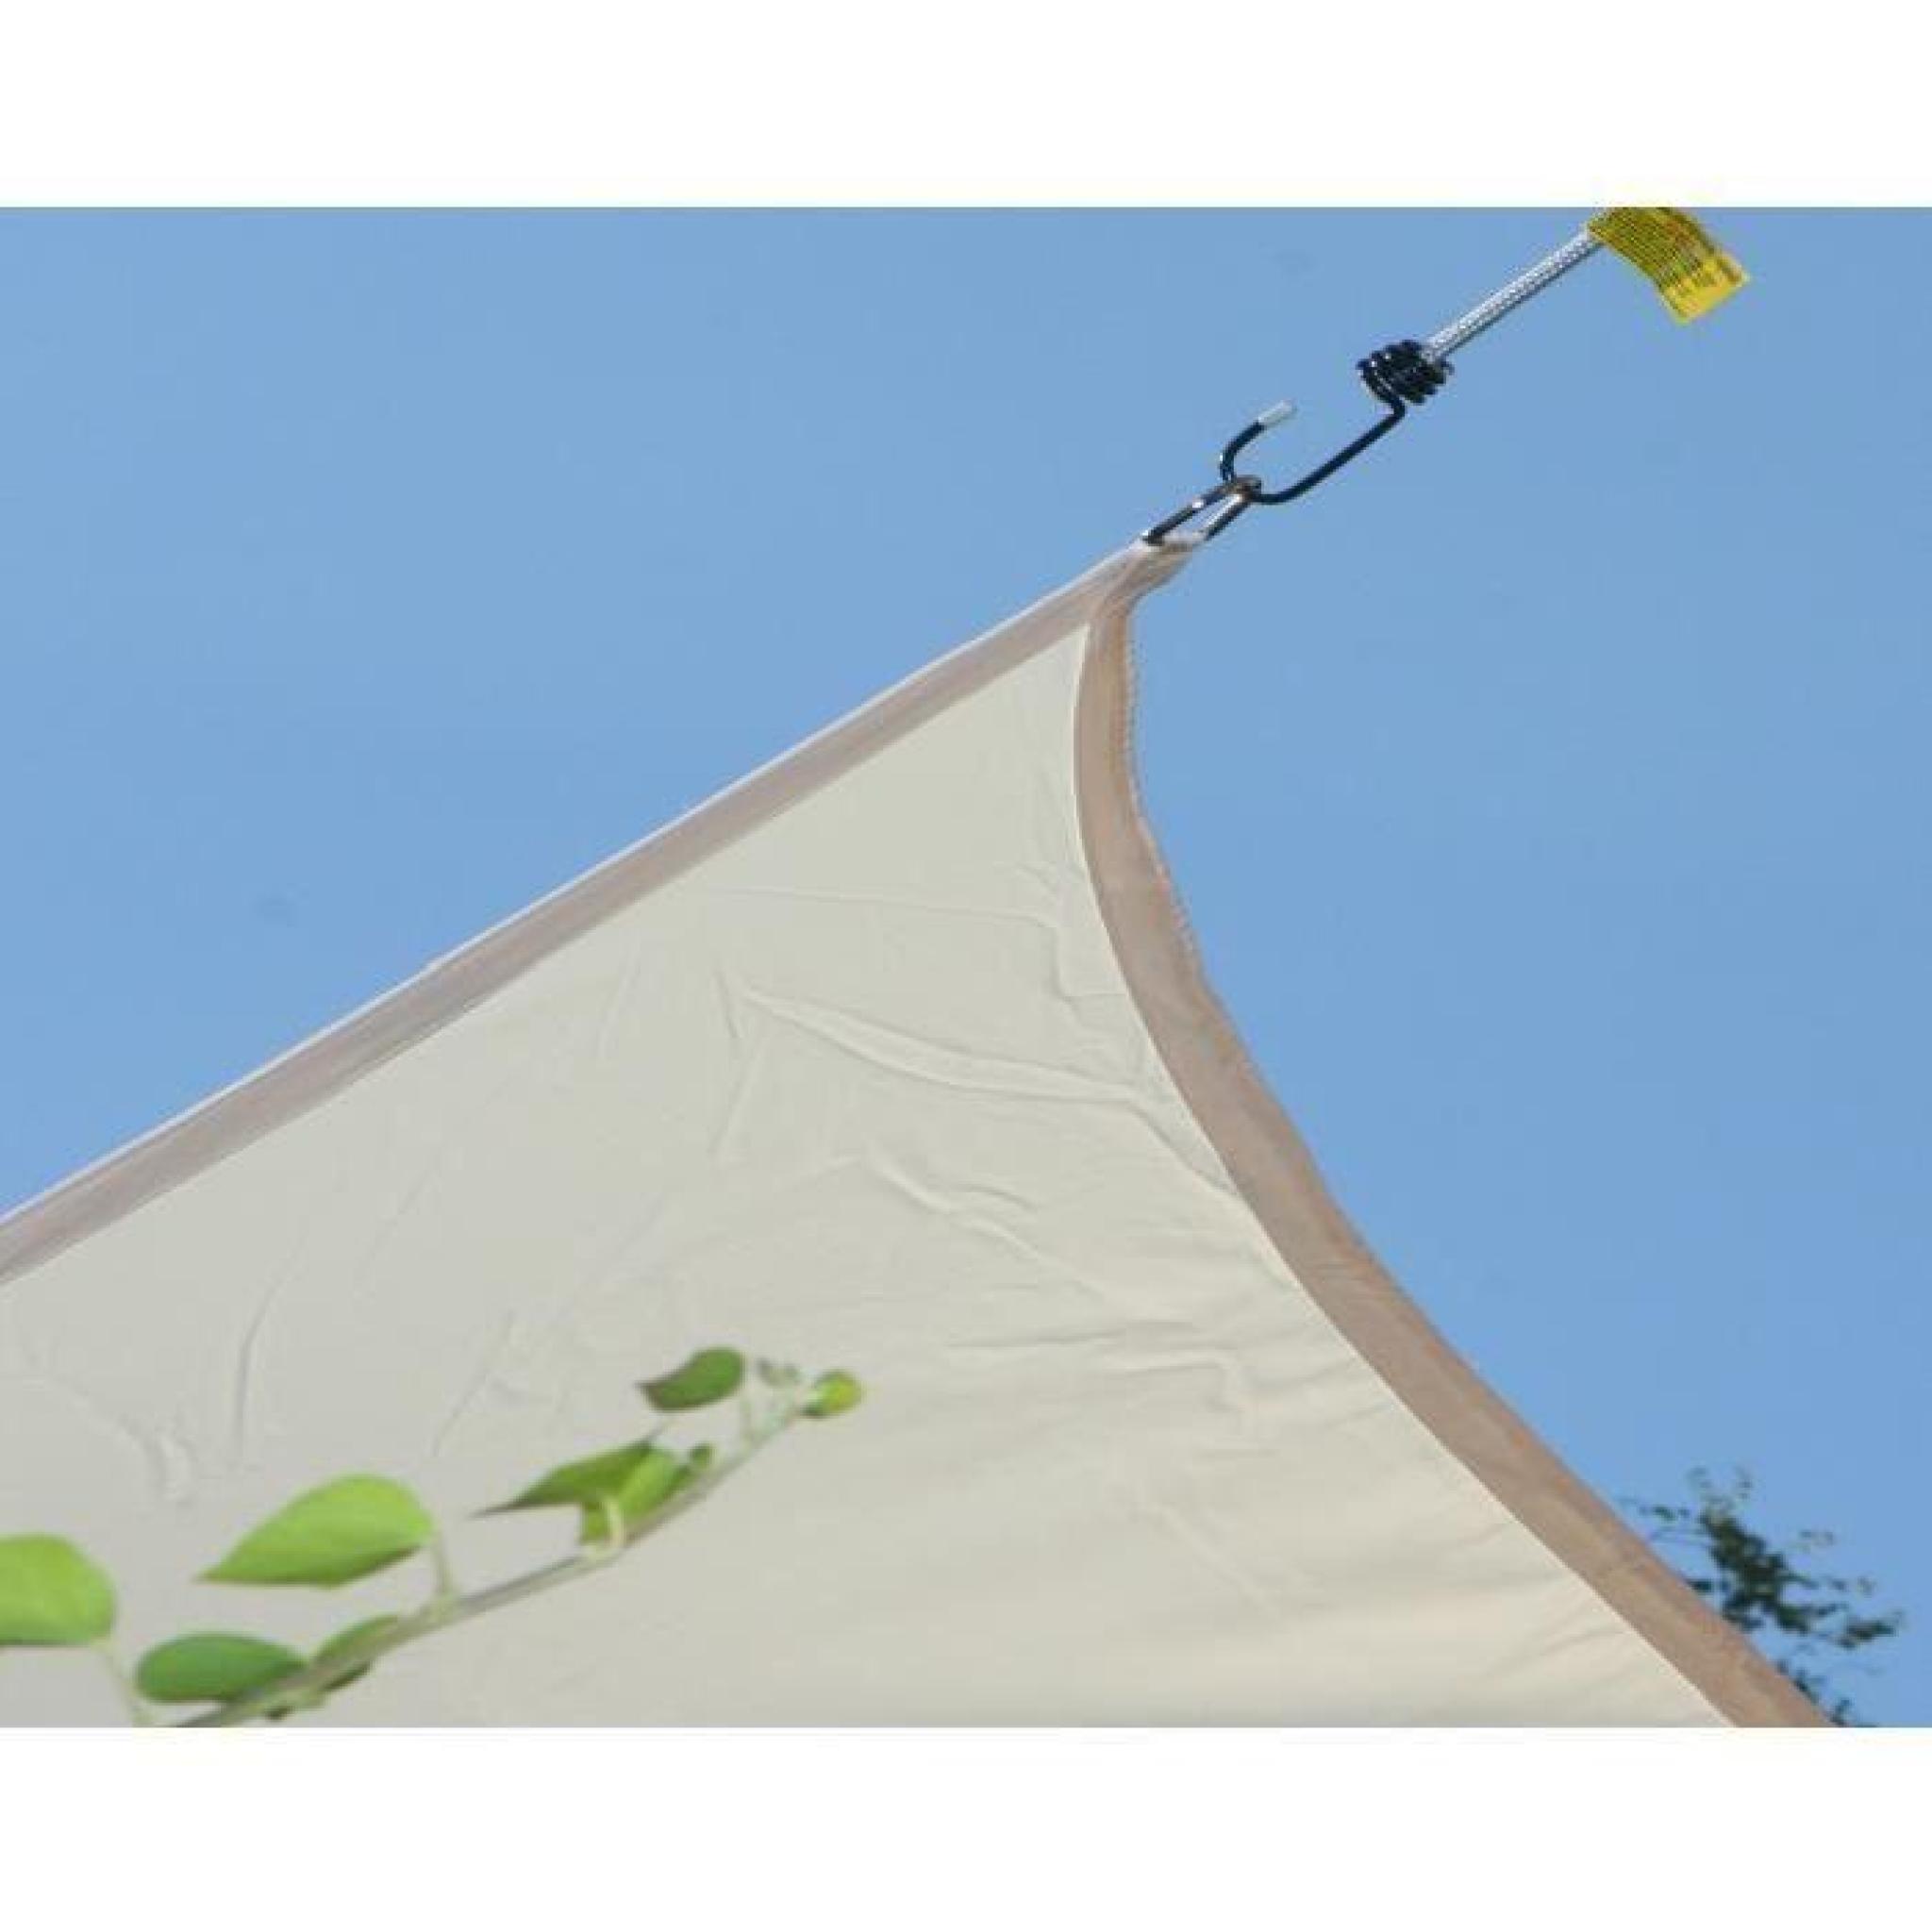 Voile d'ombrage Carrée Vert pomme en Polyester 200g-m² anti-UV, 360 x 360 cm avec kit de fixation pas cher